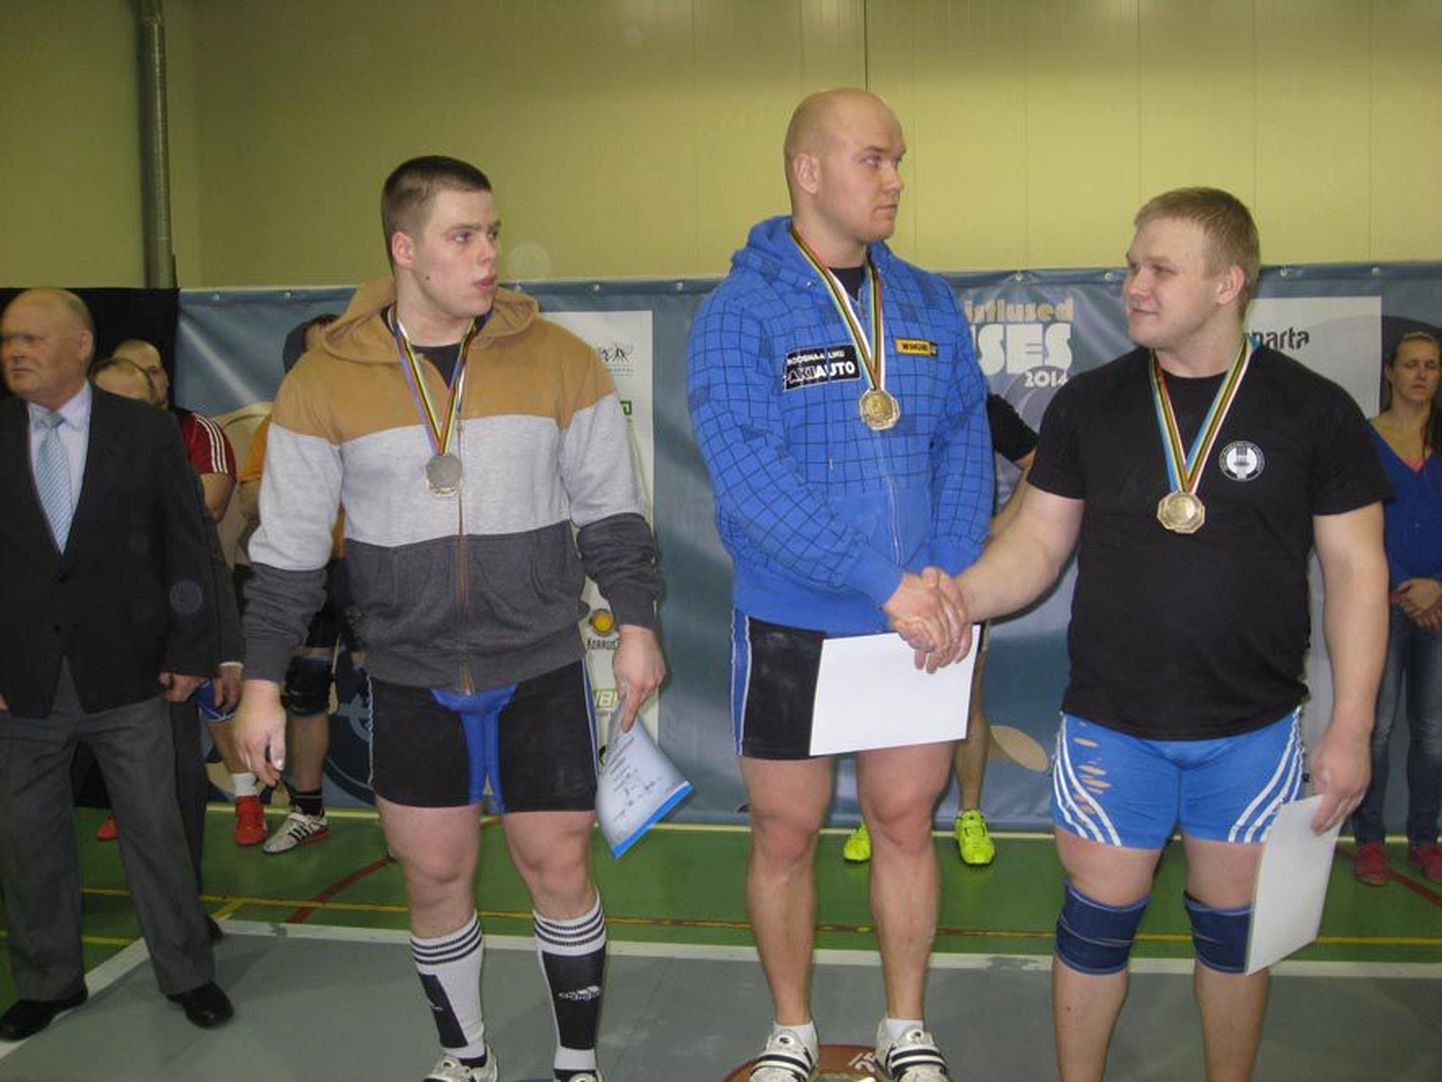 Leho Pent (keskel) võitis Tallinnas toimunud meistrivõistlustelt oma karjääri kuuenda meistritiitli. Nüüd jätkub hooaeg ettevalmistusega Euroopa meistrivõistlusteks.